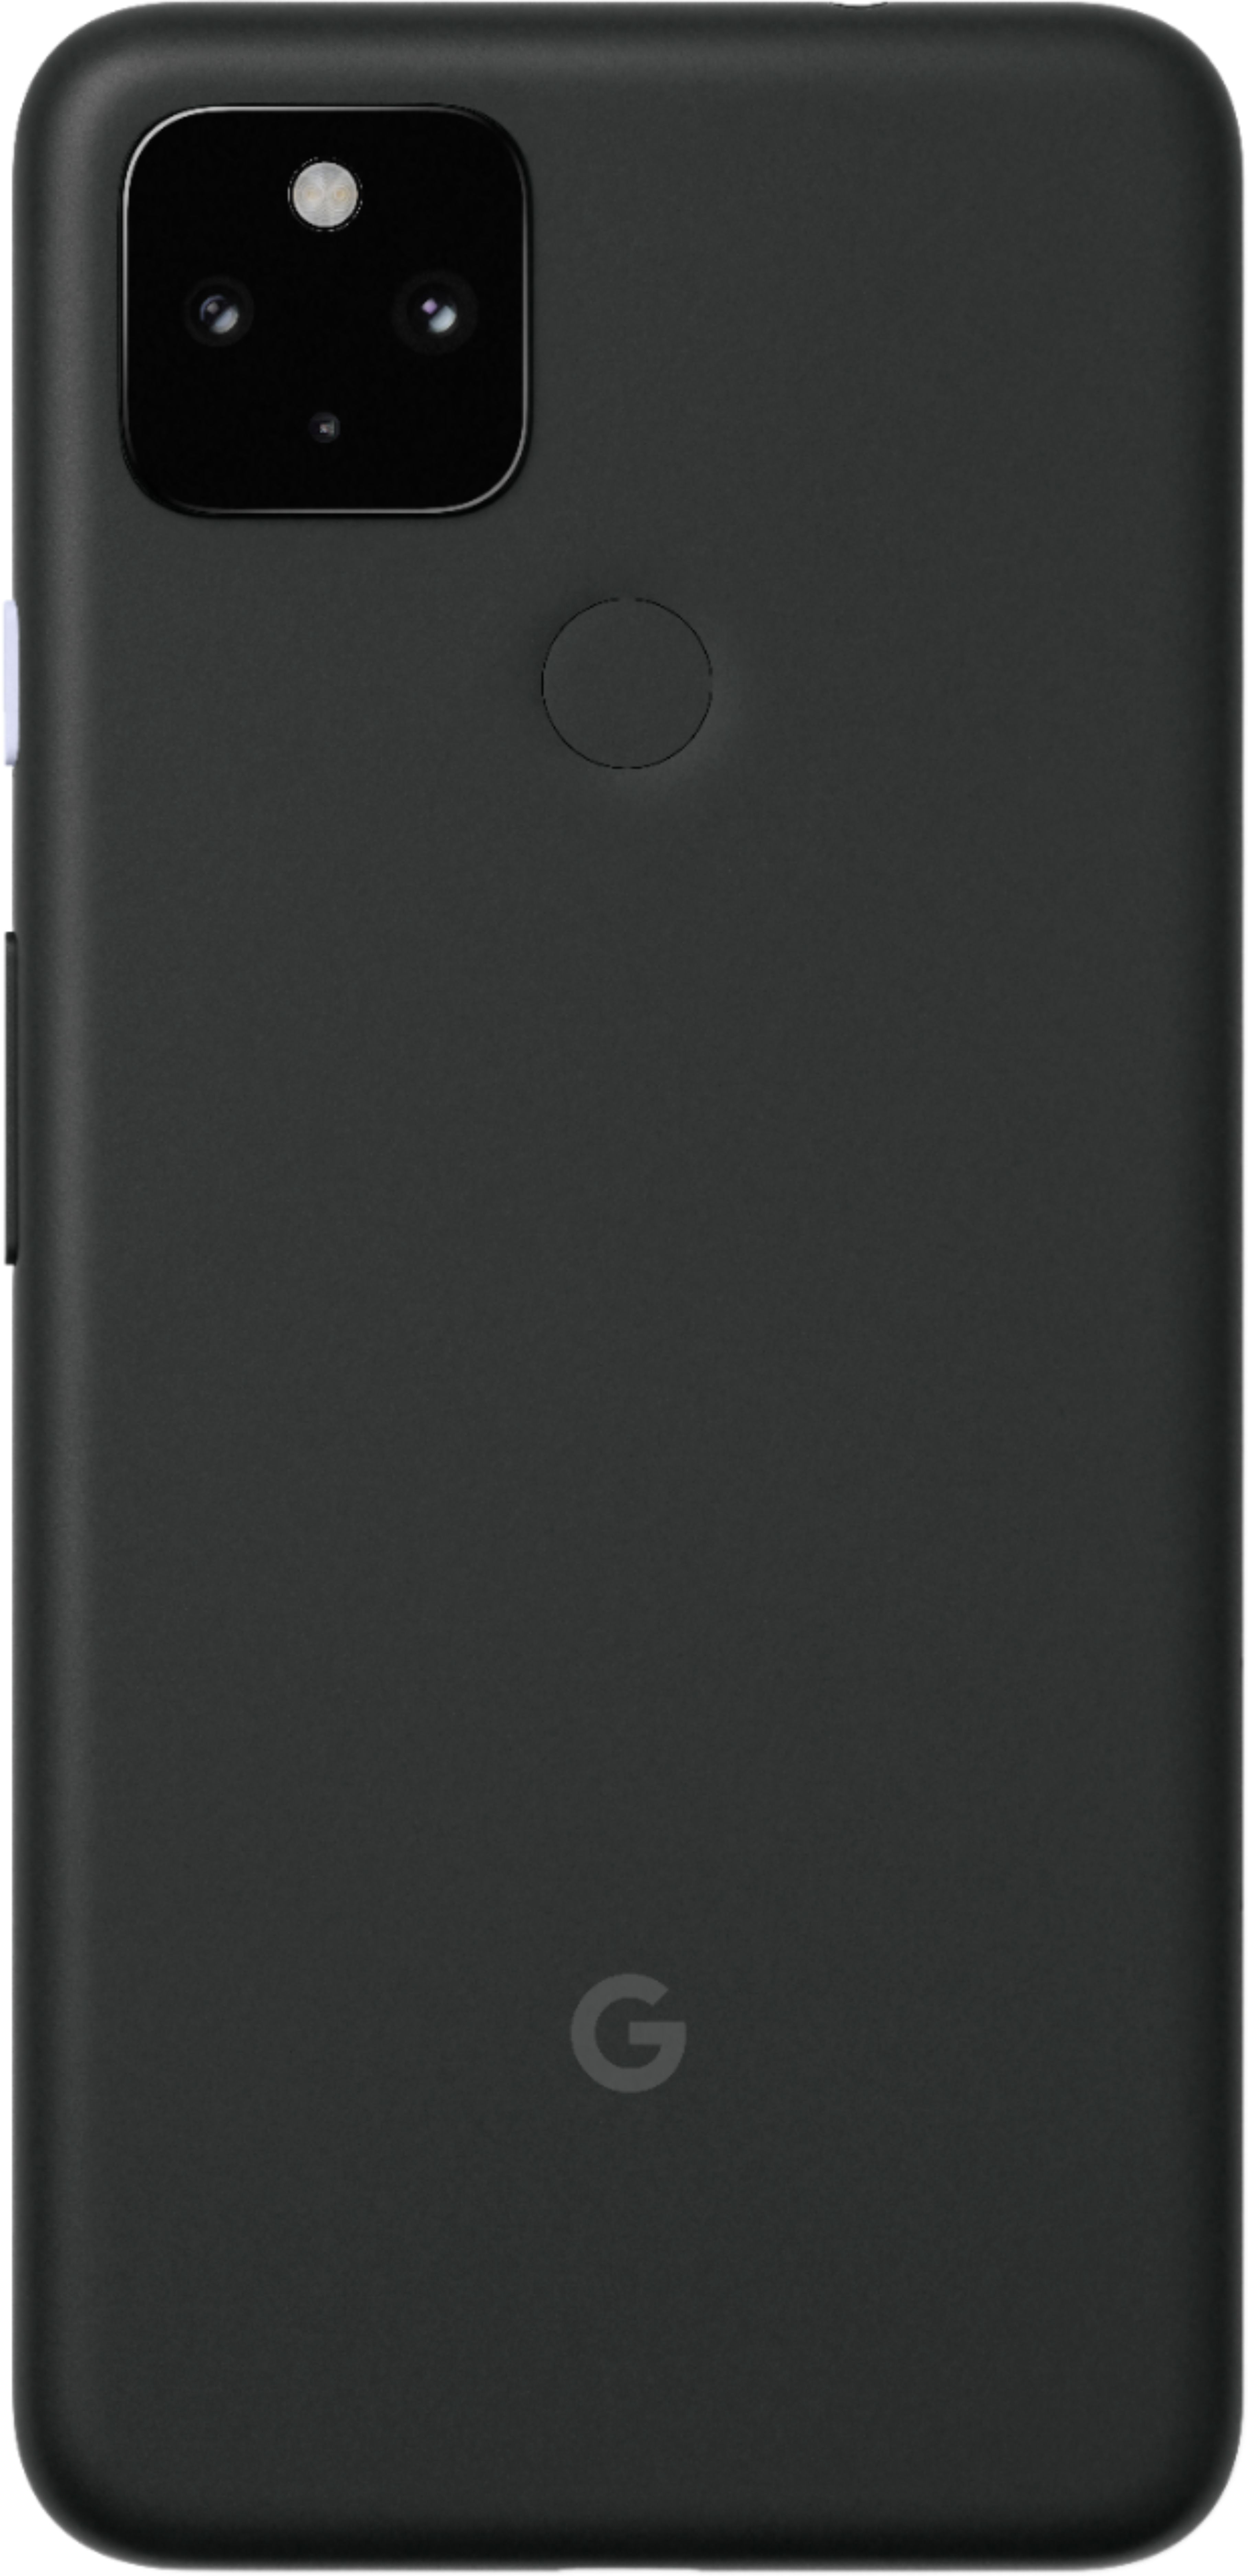 Google Pixel 4a 5G UW 128GB Just Black (Verizon) GA01945-US - Best Buy